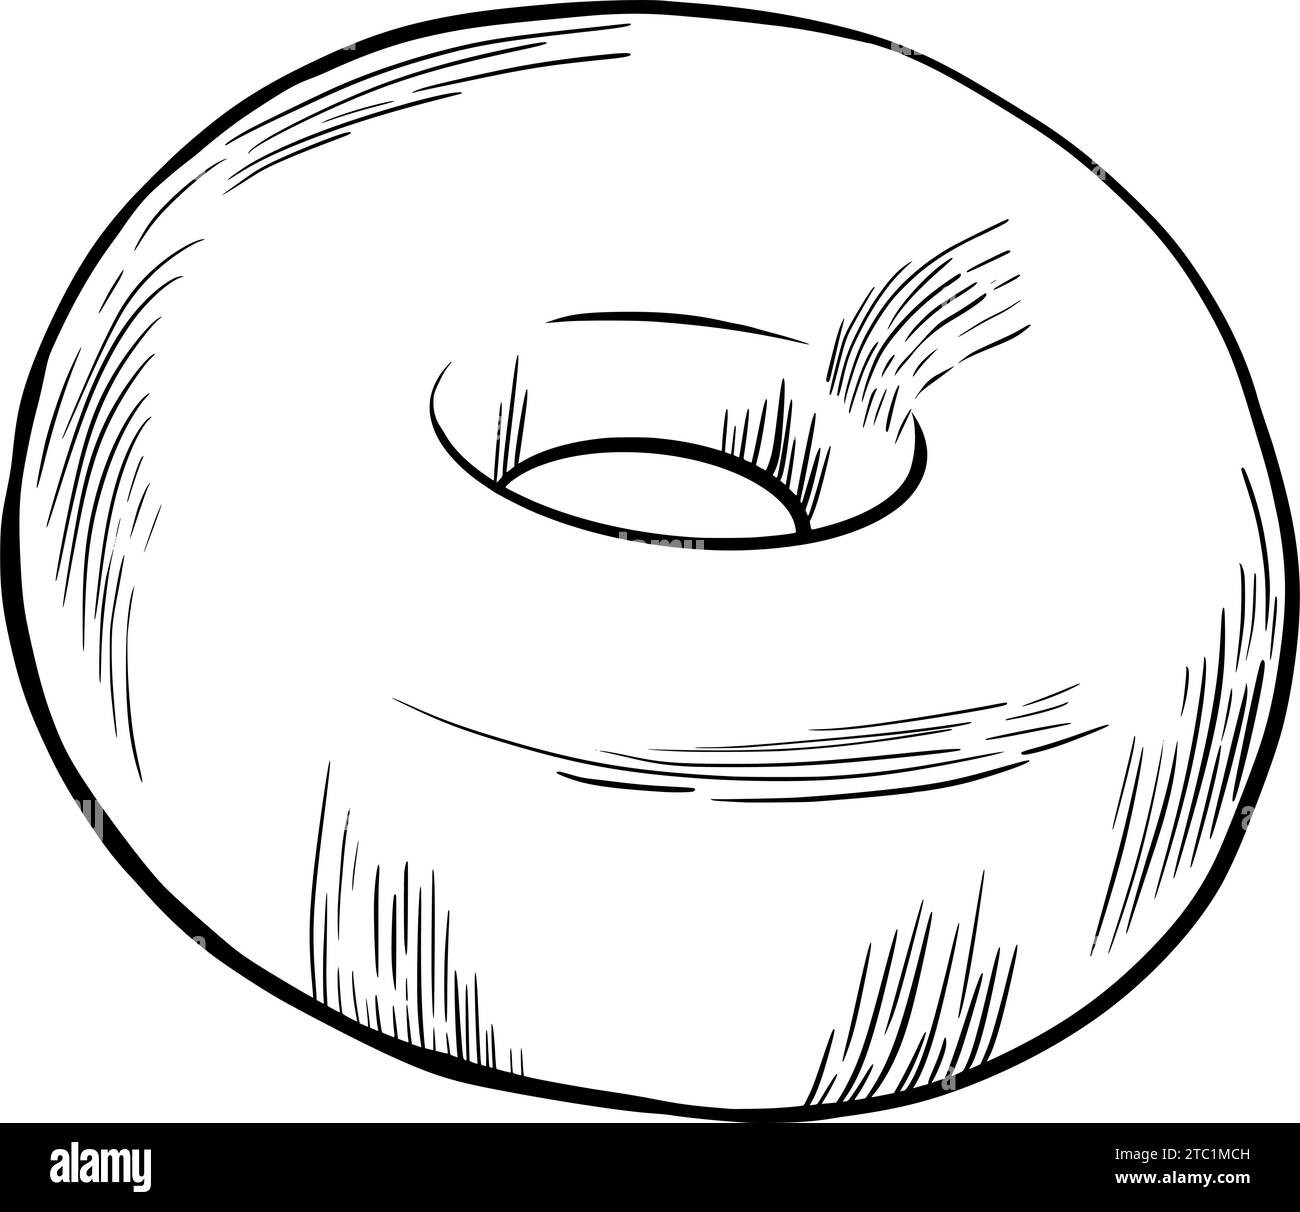 Klassischer Donut. Vektorabbildung. Grapgischer STYLE. Handgezeichnet in einem einfachen minimalistischen Stil. Kann für Küche, Notizen, Kochbuch, Textilien verwendet werden. Will Stock Vektor